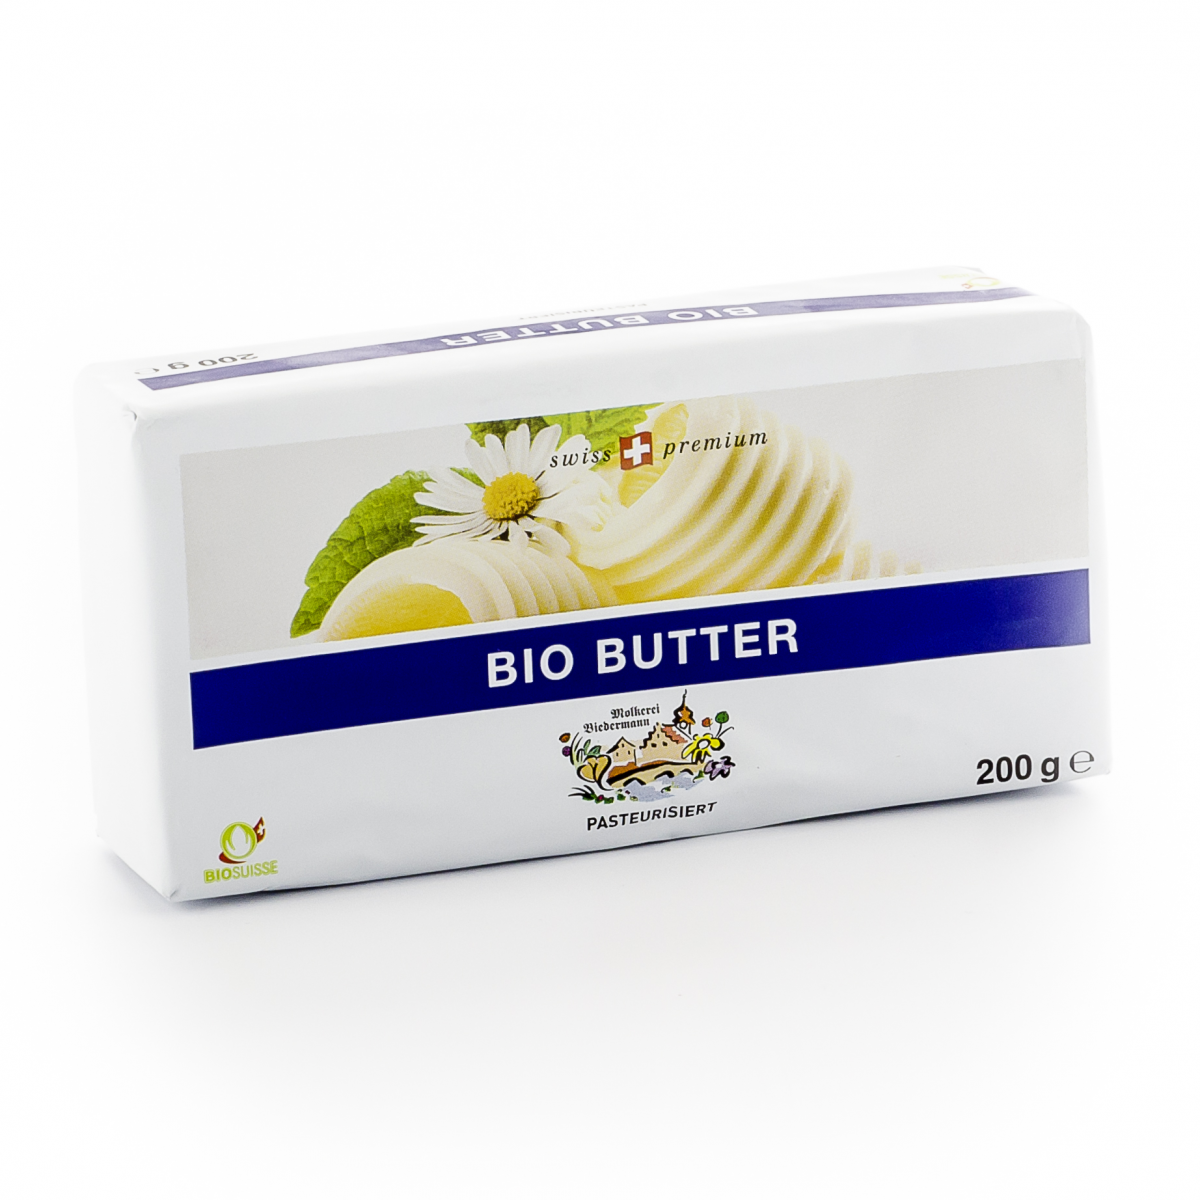 Bio Butter Biedermann 200g